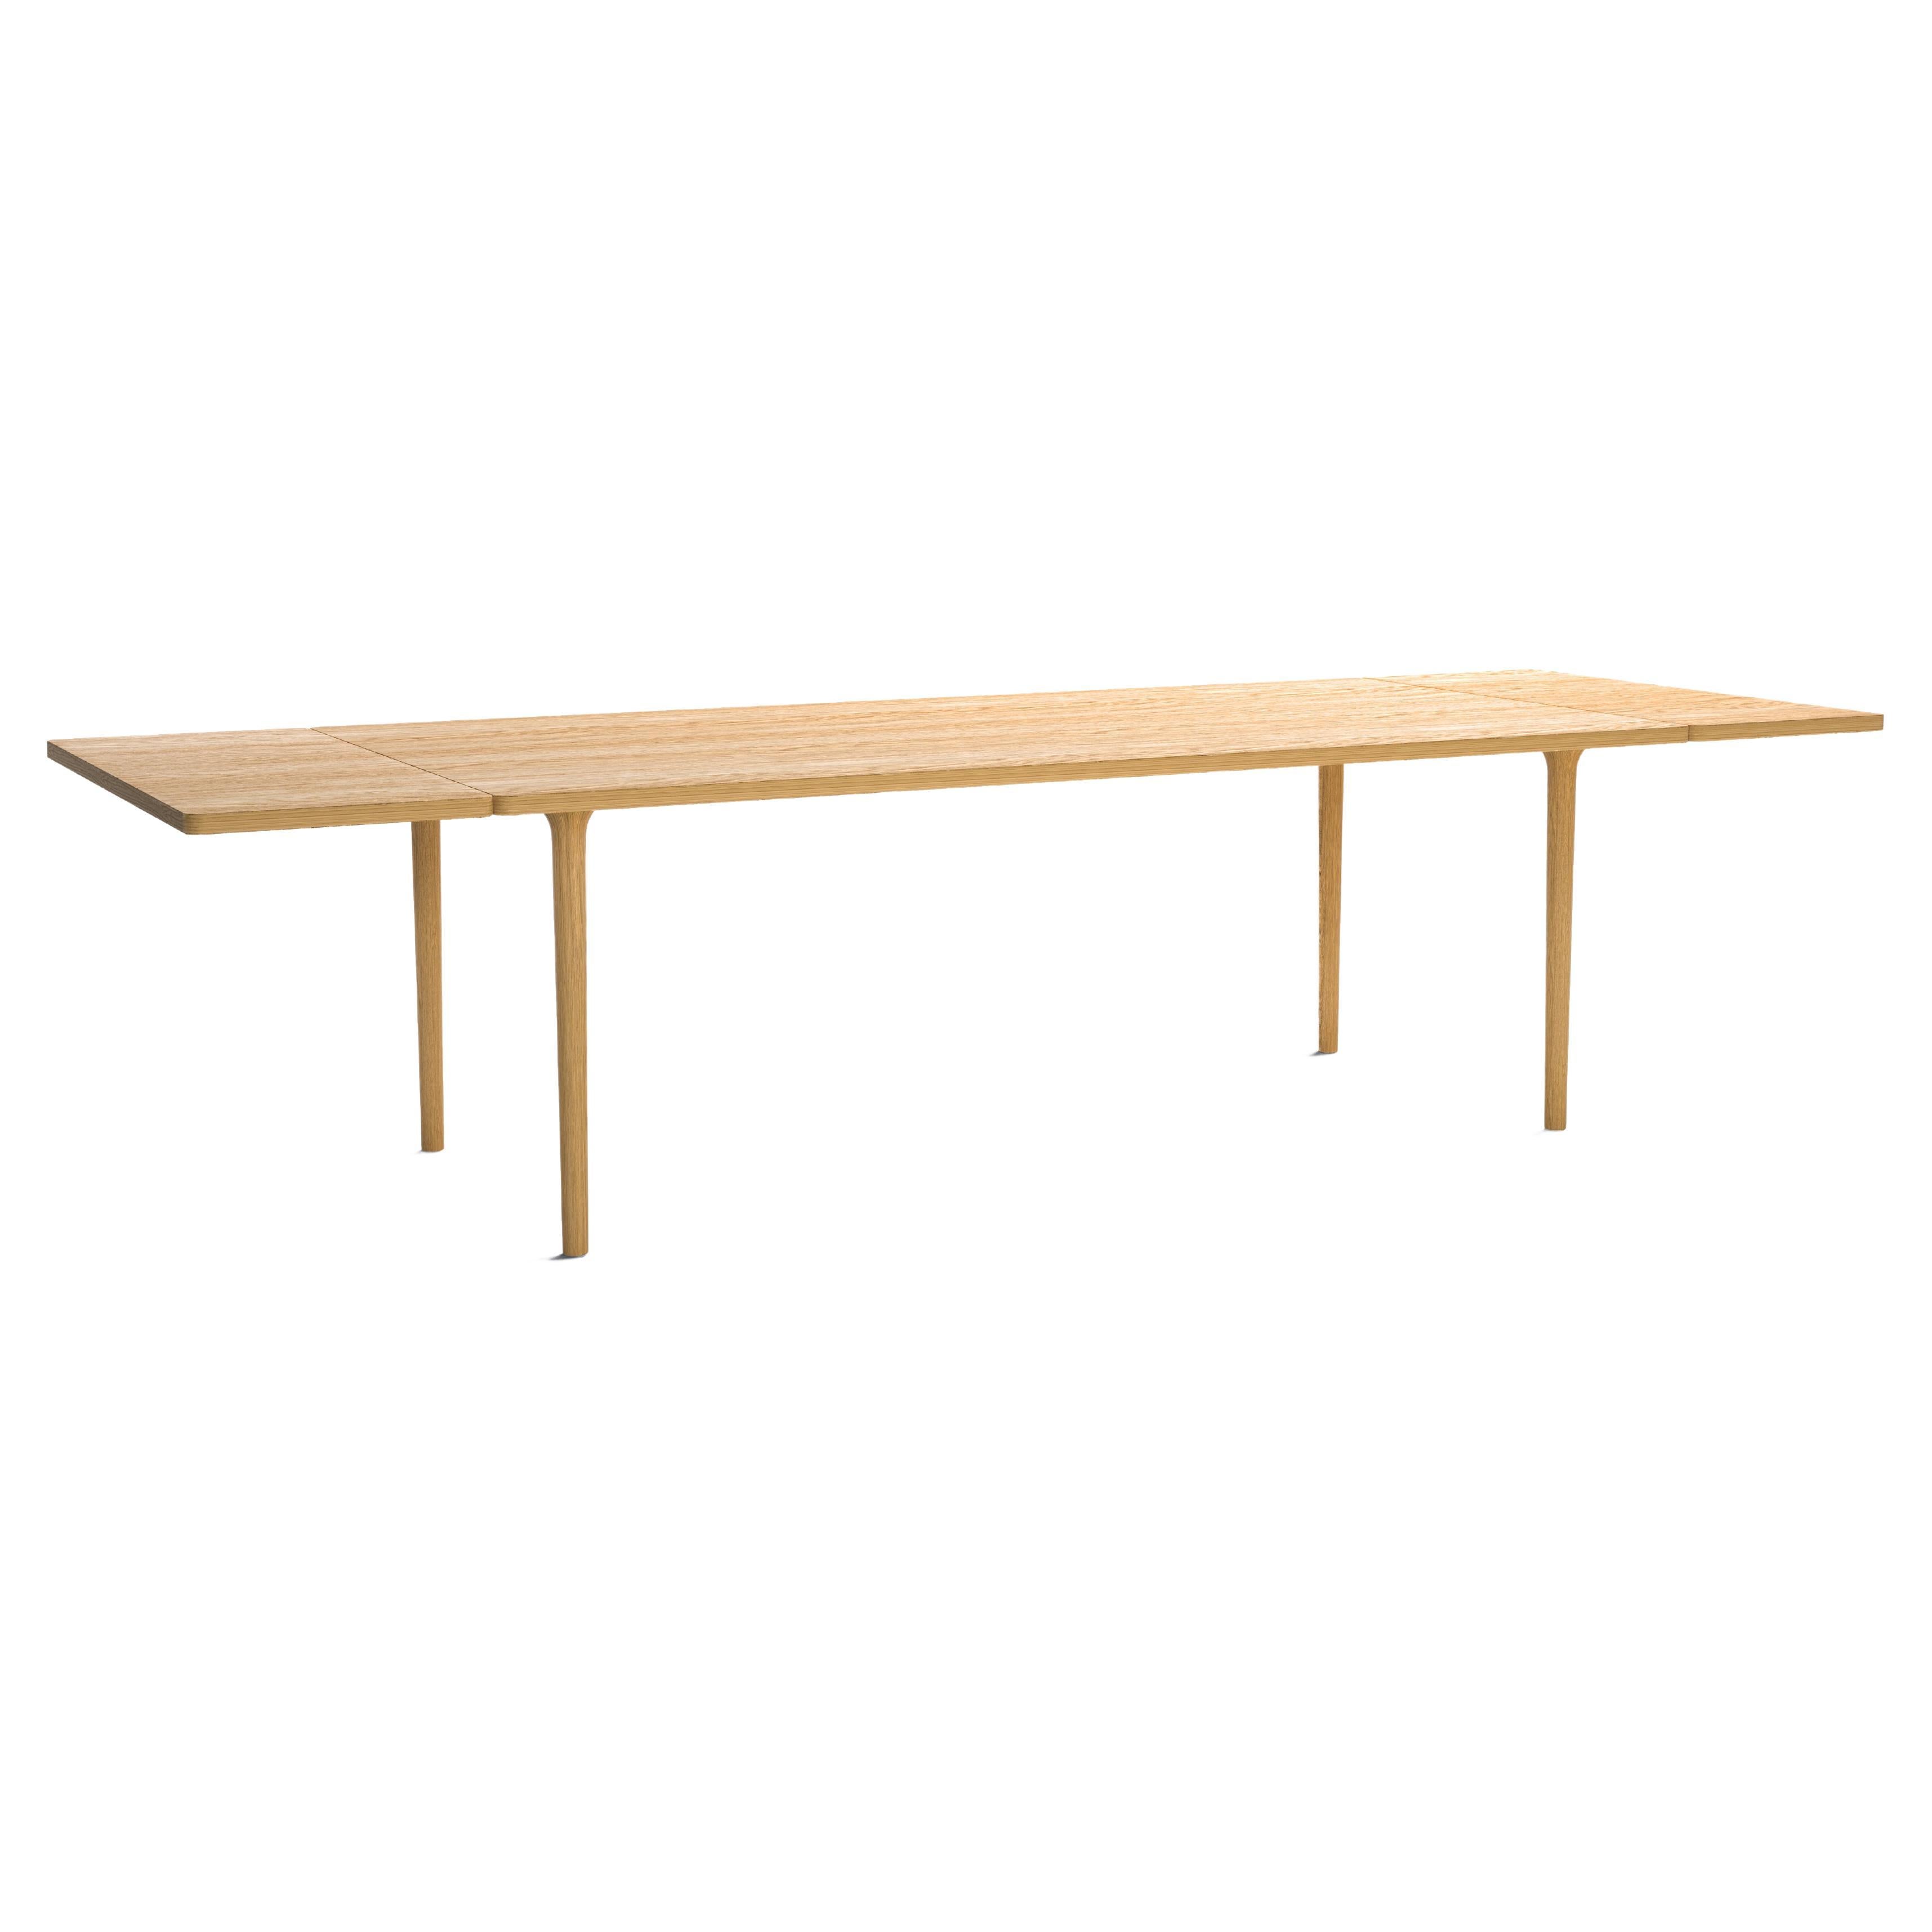 Minimalist Modern Table in Oak Wood Extendable